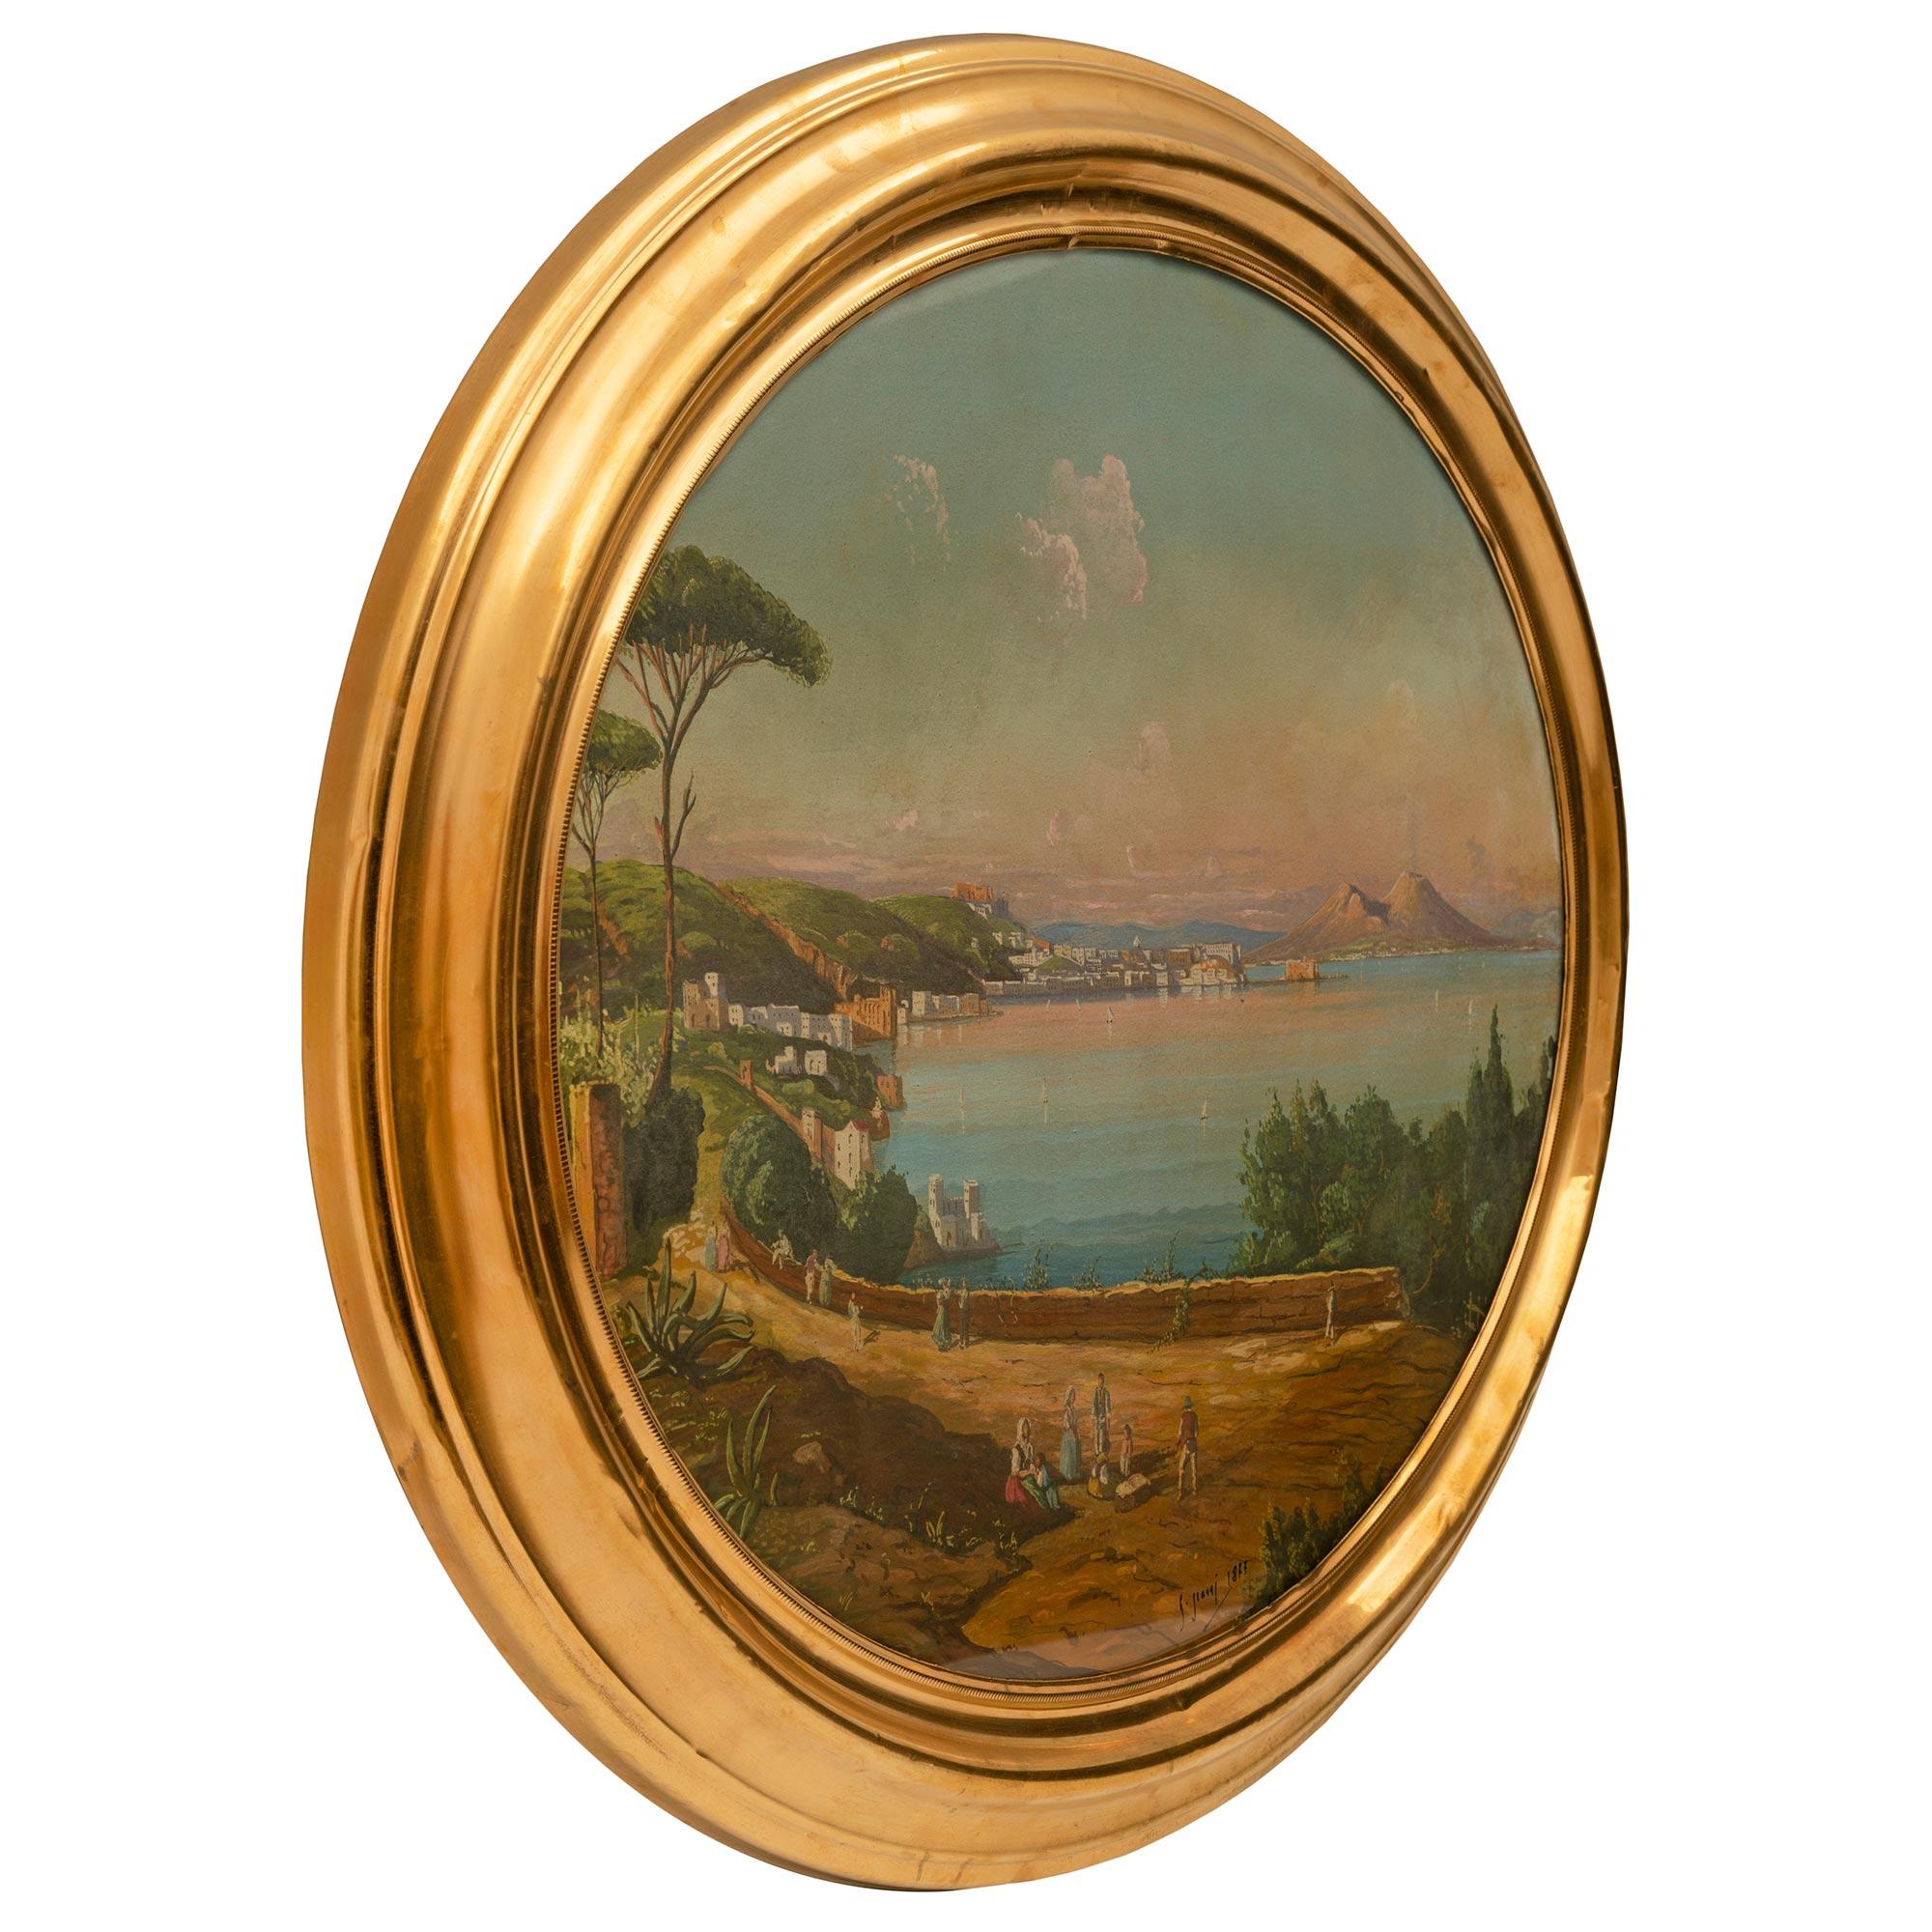 Eine schöne italienische Gouache aus dem 19. Jahrhundert in ihrem ursprünglichen Ormolu-Rahmen. Das schöne längliche Gemälde zeigt die schöne Bucht von Neapel an einem herrlichen Tag mit dem Vesuv im Hintergrund und schönen Segelbooten und